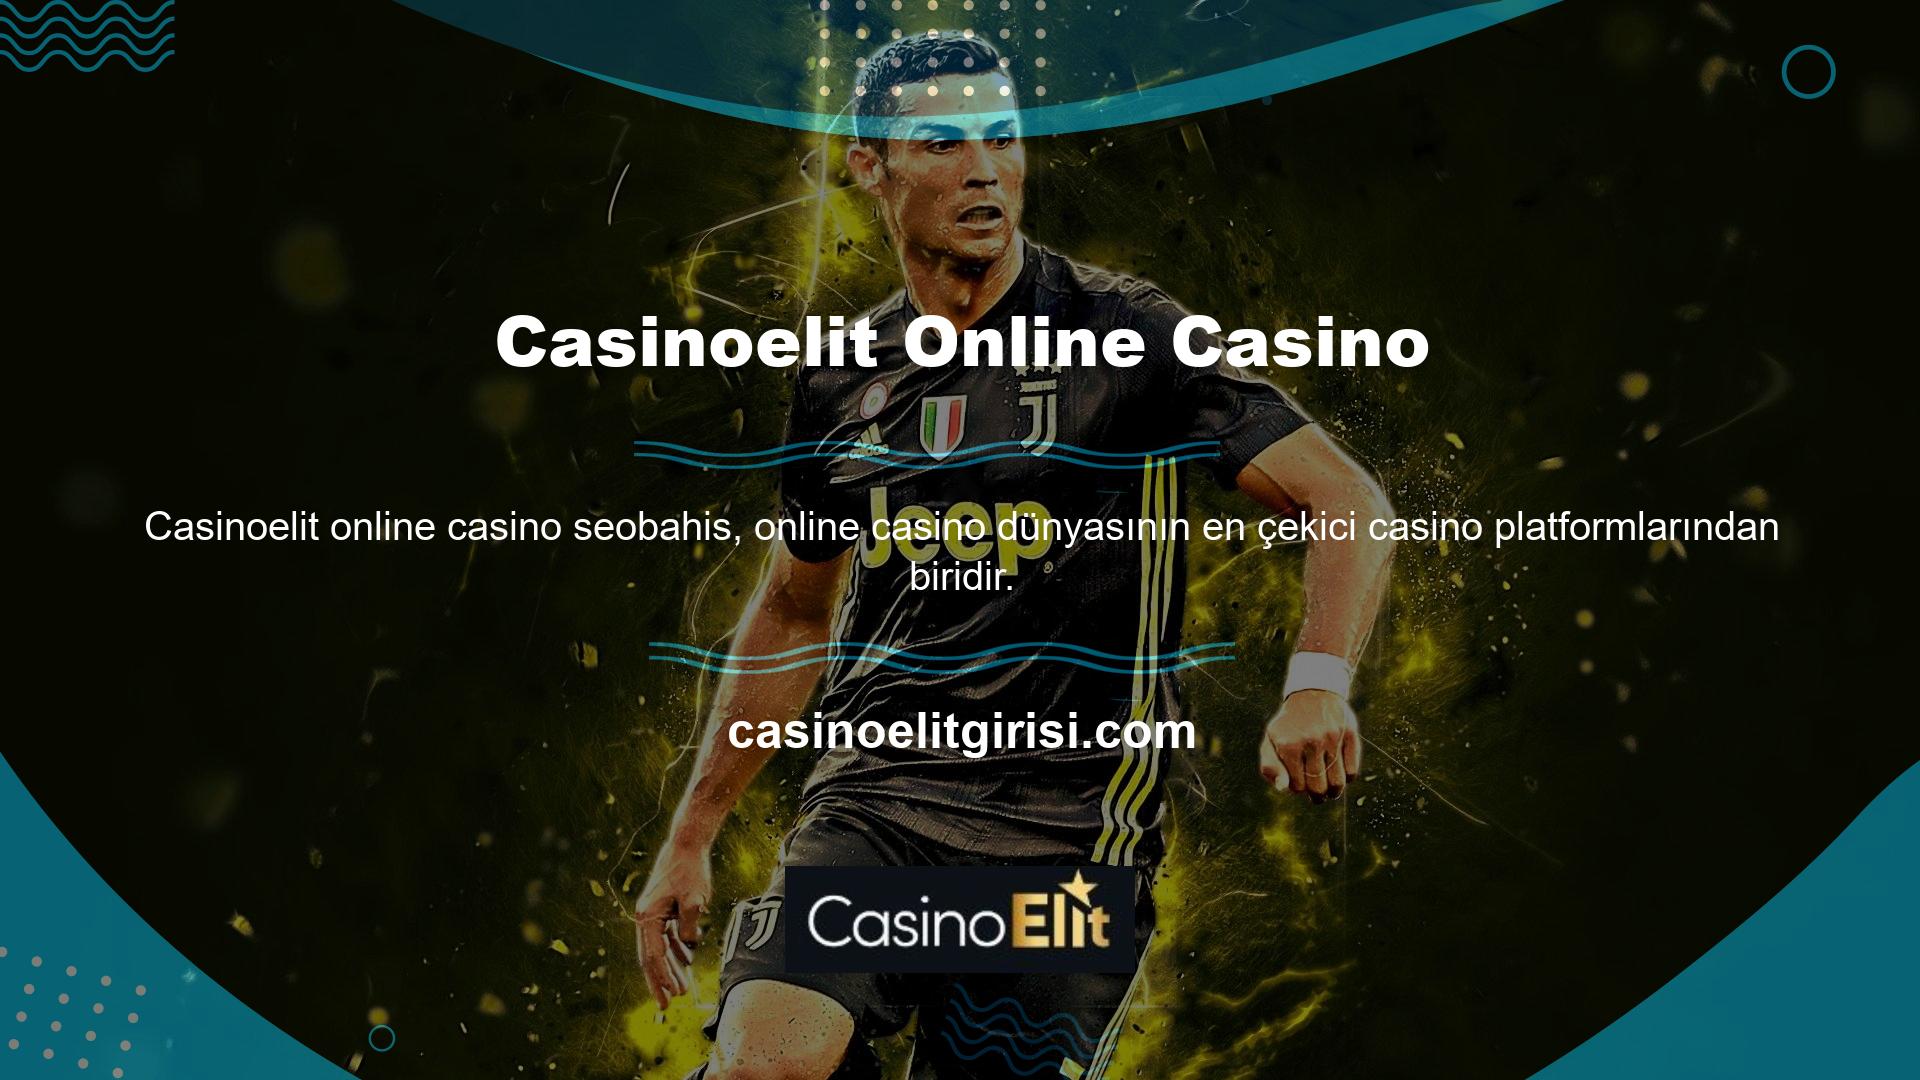 Ücretsiz üye olarak beklentilerinizi bu casino platformu ile karşılayabilirsiniz